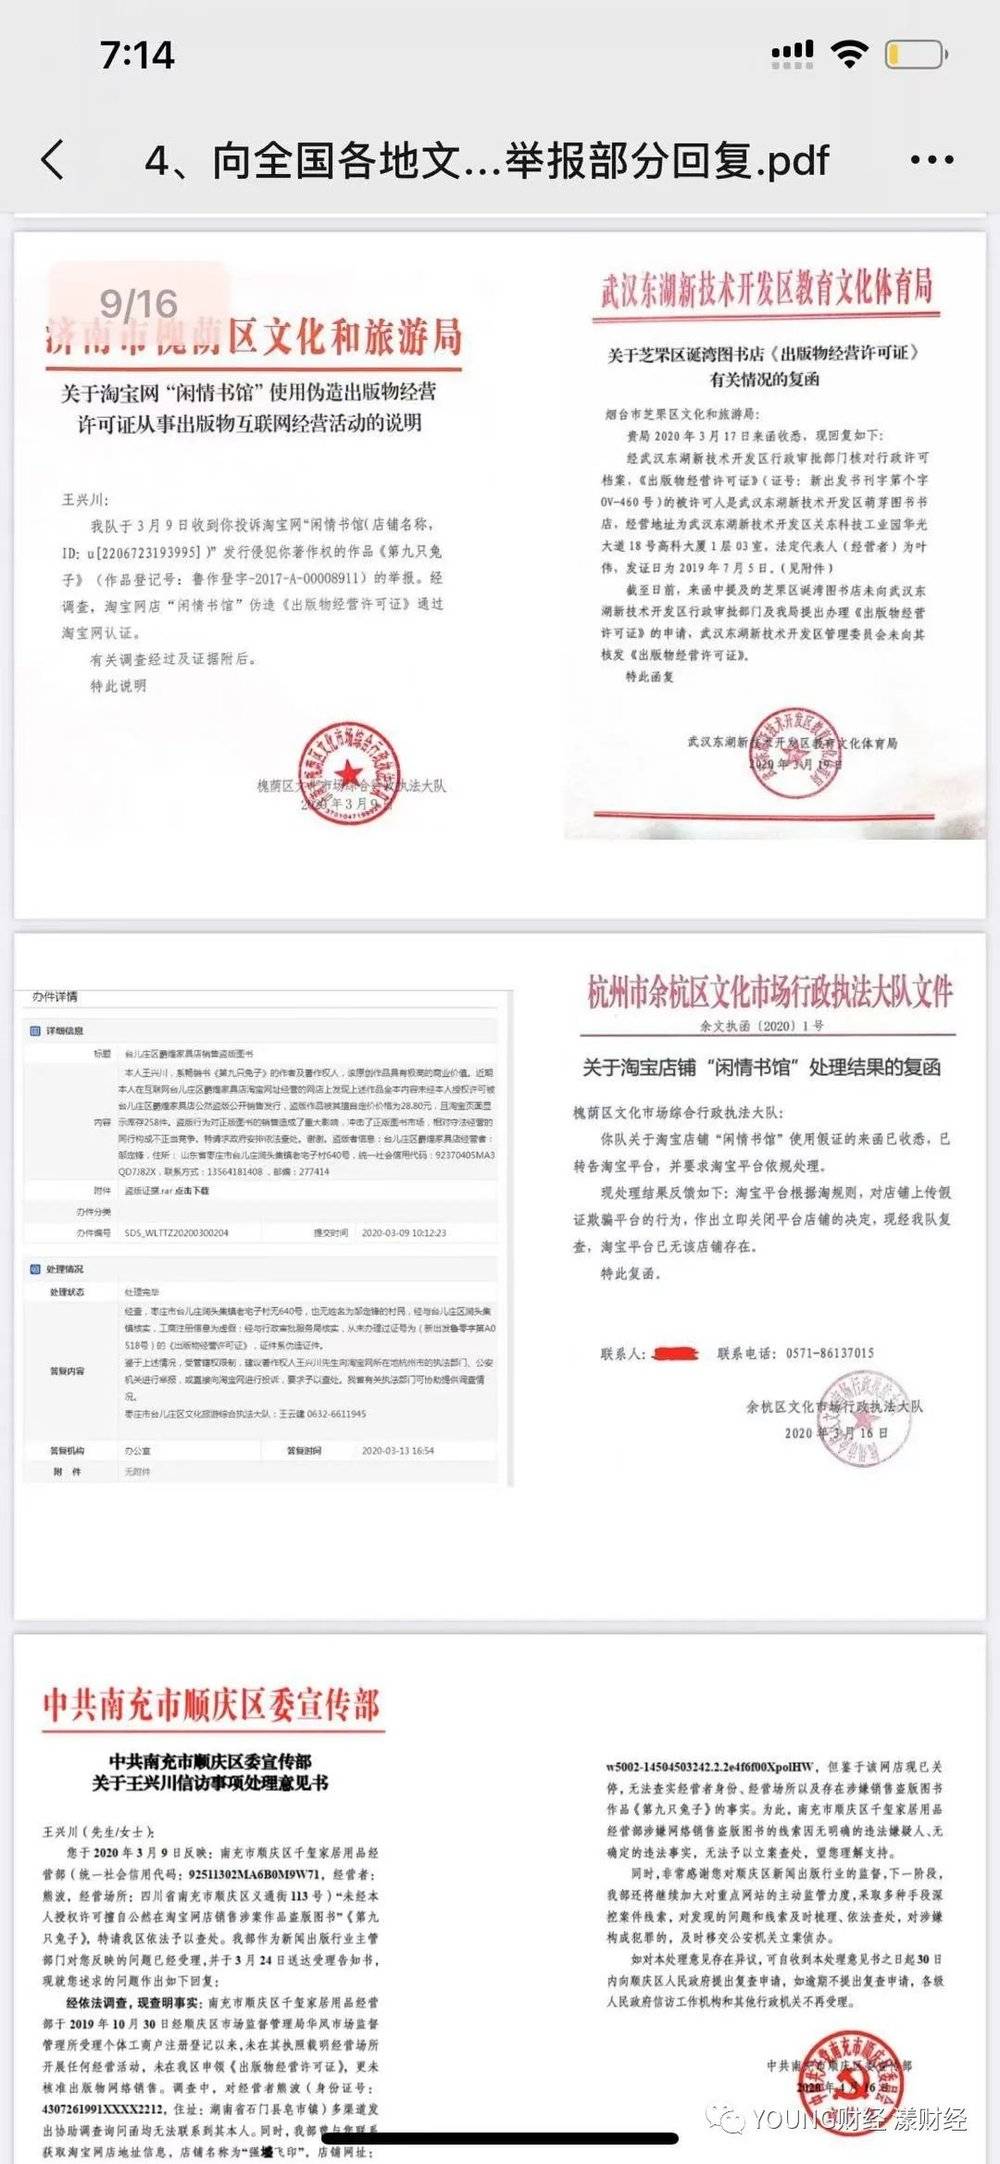 作家王兴川就各电商平台的盗版作品向各地文化执法部门投诉后得到的回复<br>